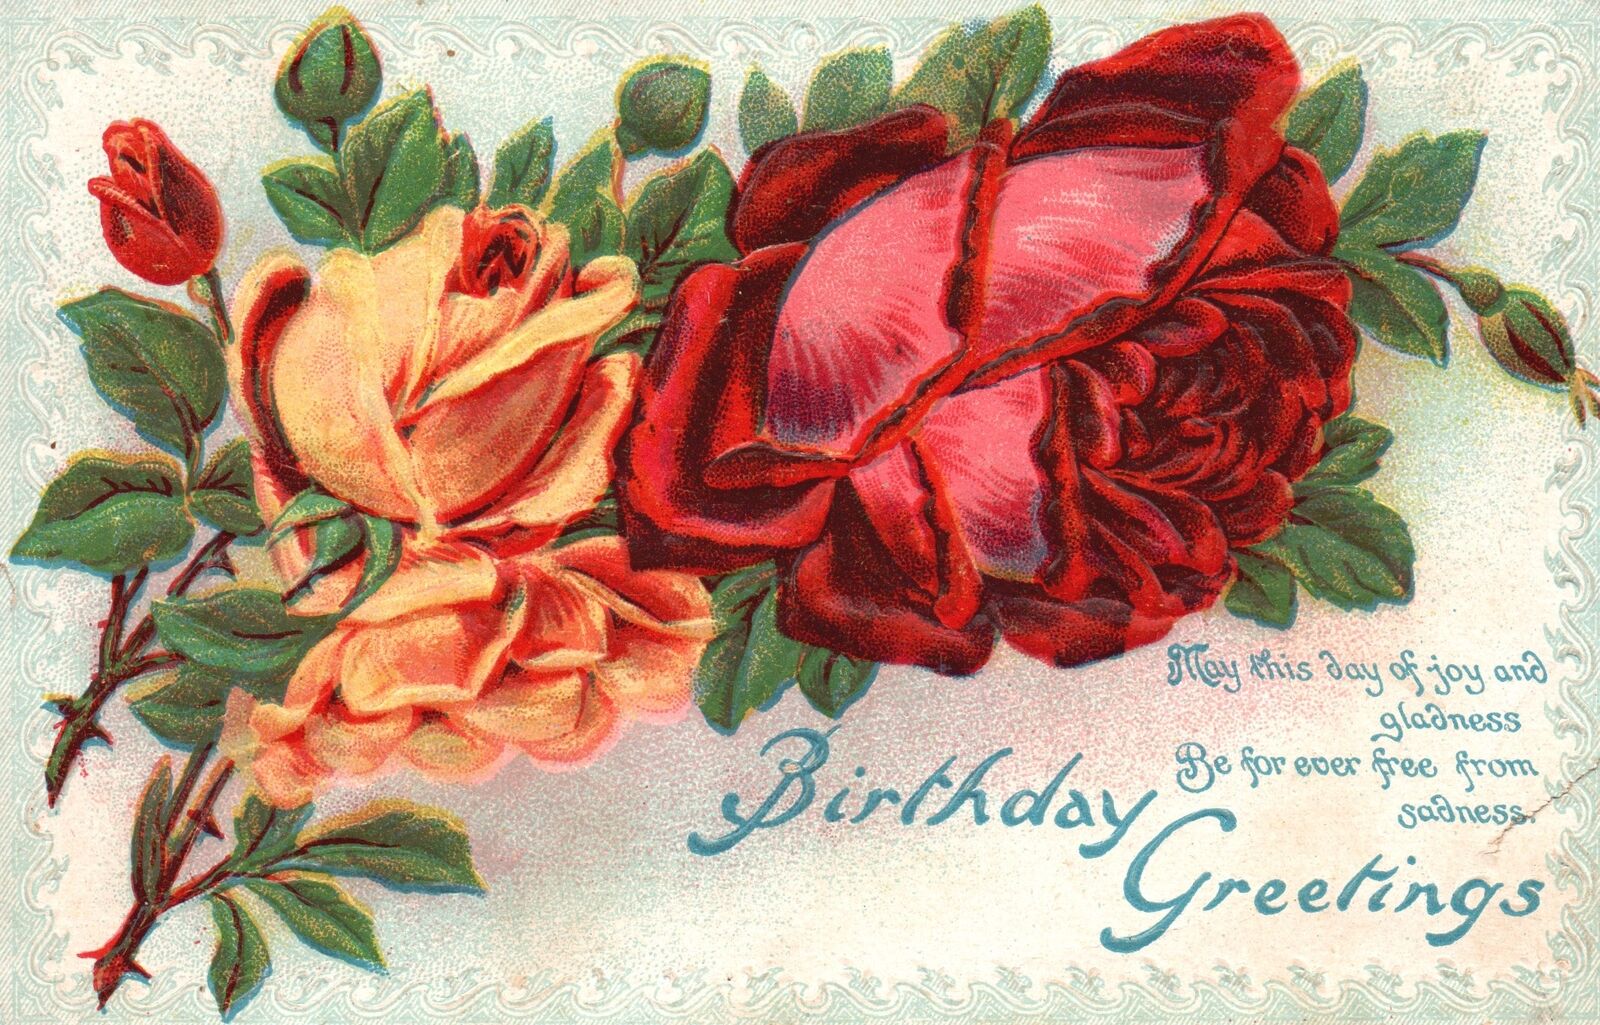 Vintage Postcard Birthday Greetings Red Orange Rose Flowers Wishes Card